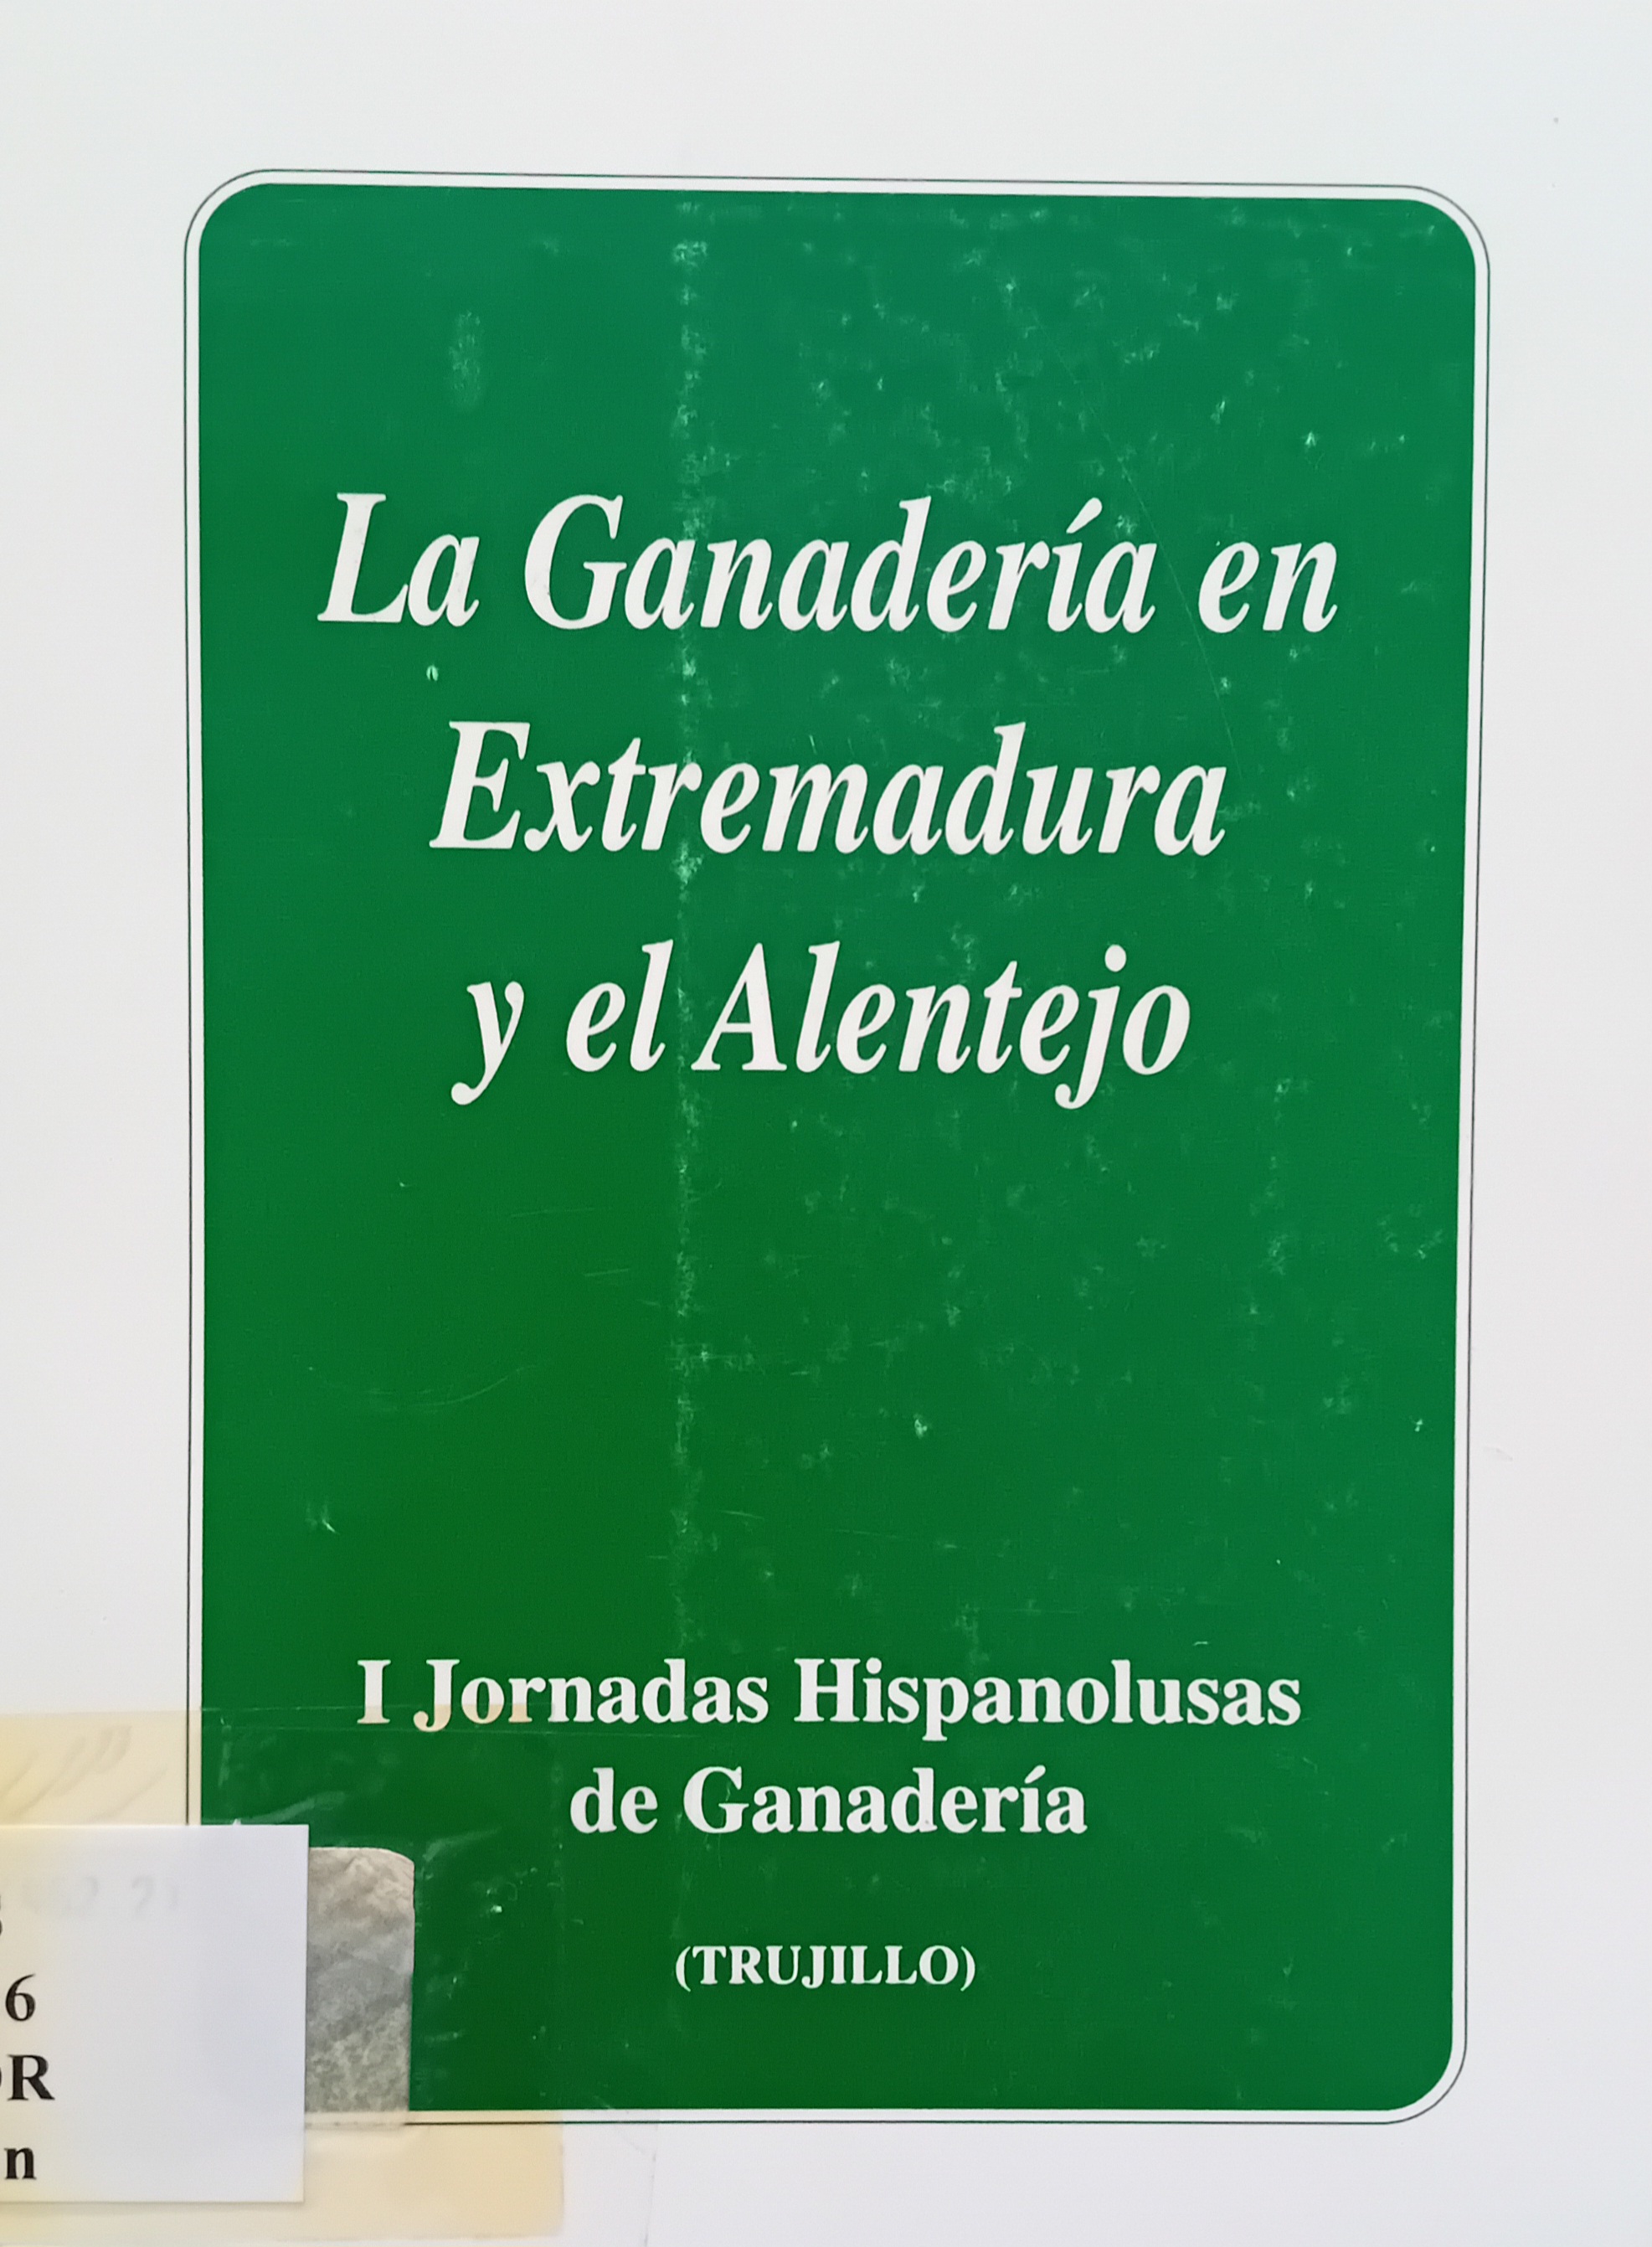 Imagen de portada del libro La ganadería en Extremadura y el Alentejo